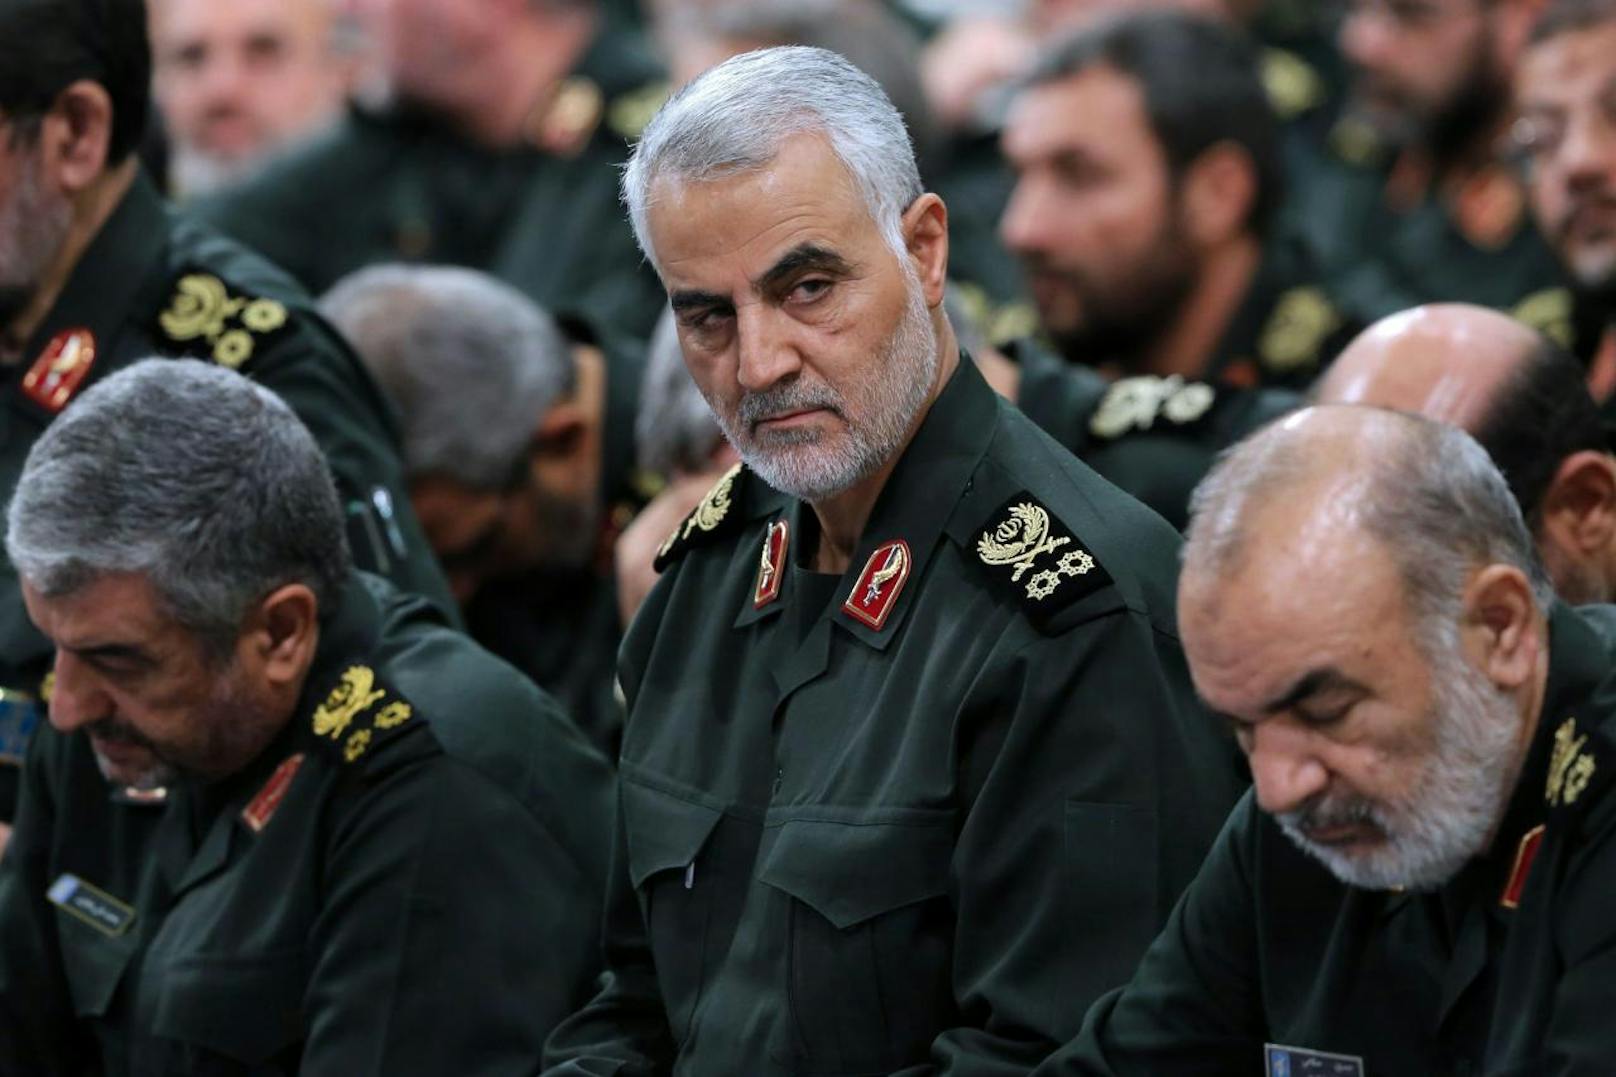 Der hochrangige iranische General Qasem Soleimani kam bei einem US-Raketenangriff in Bagdad ums Leben.